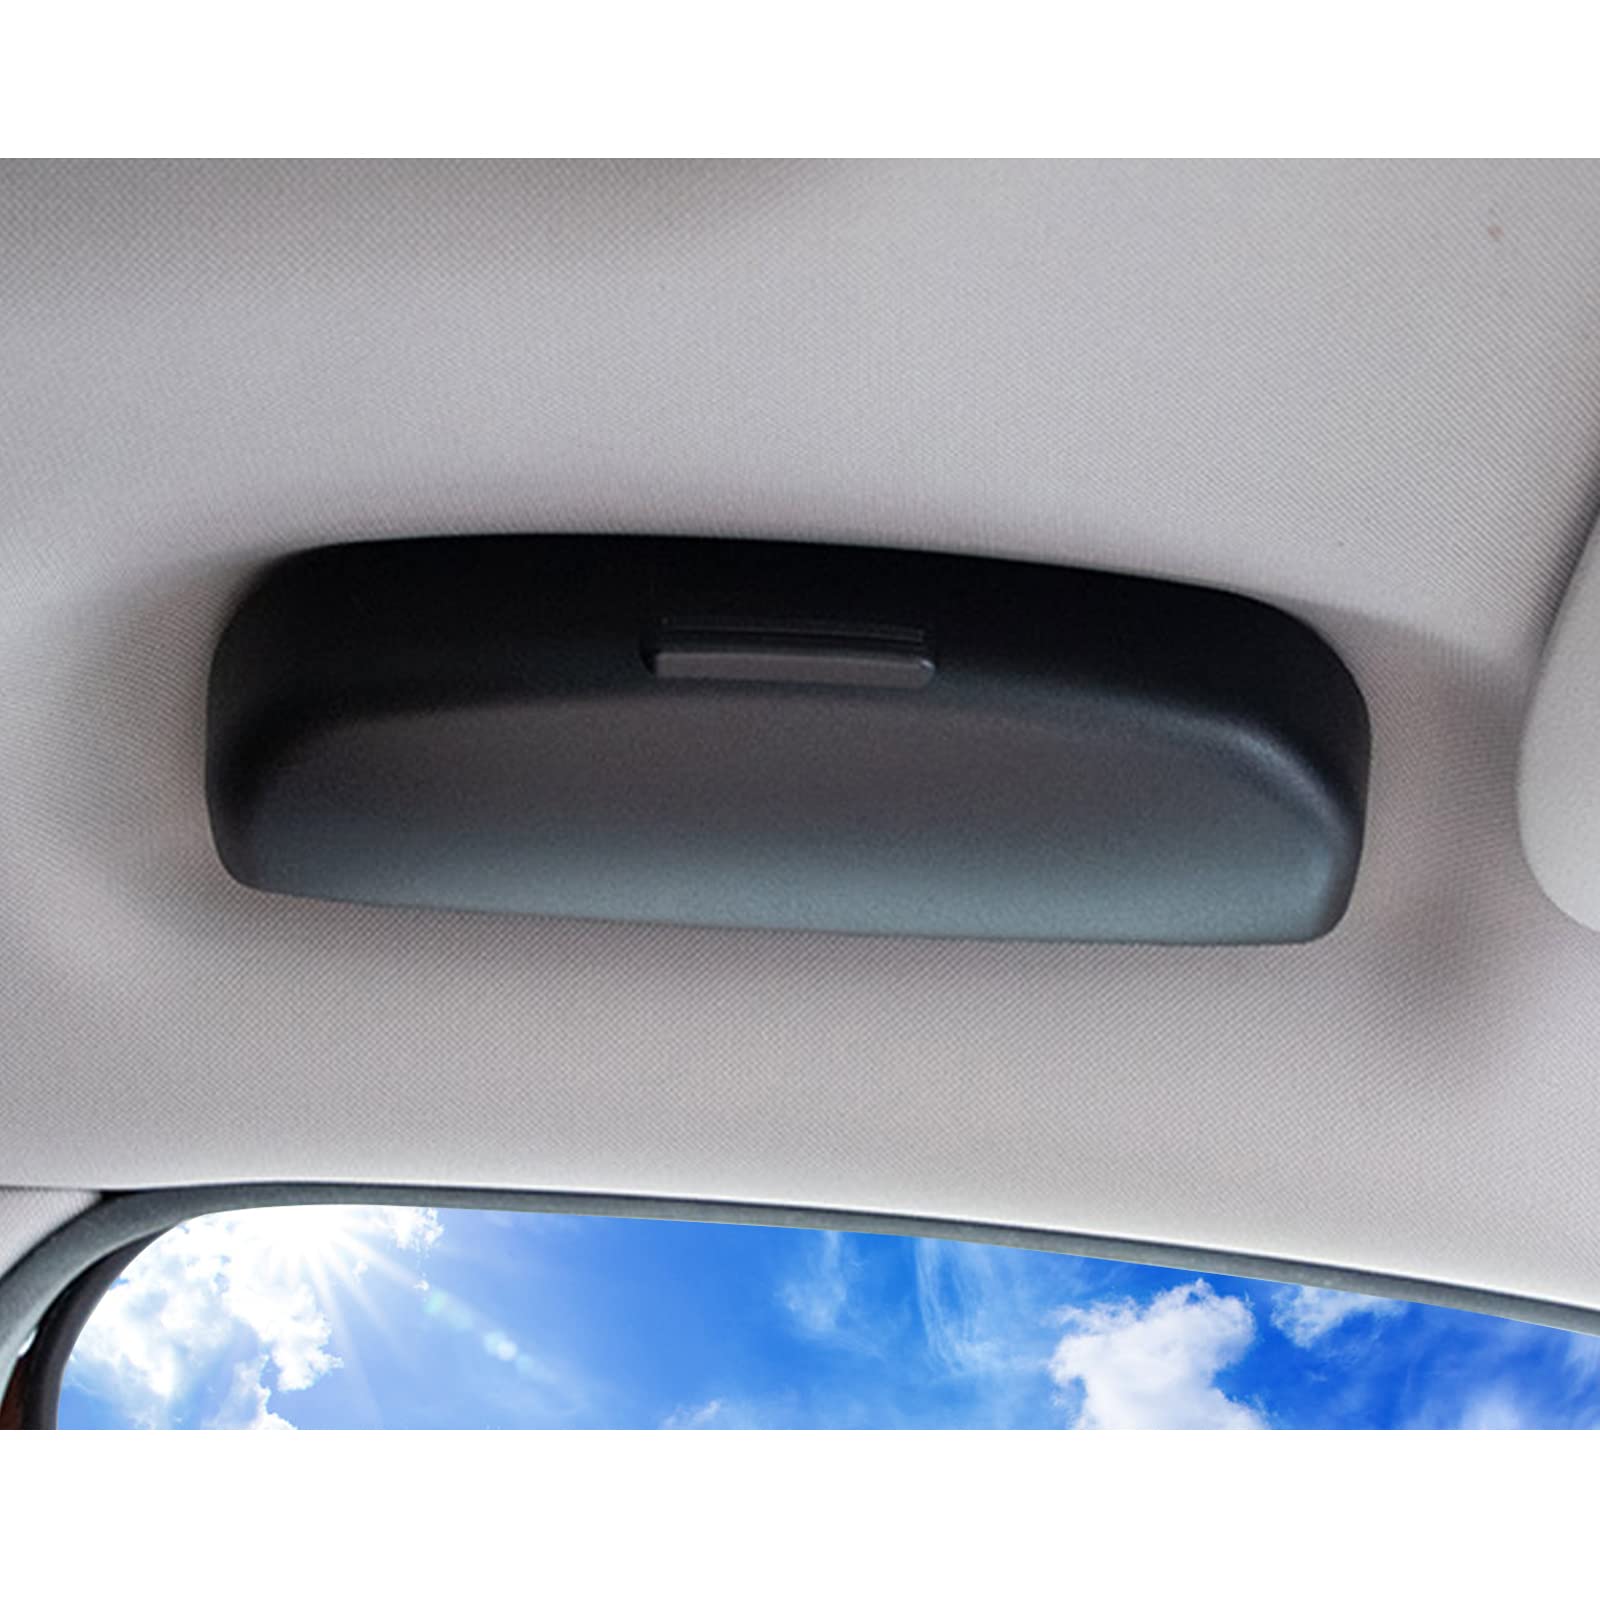 BIXUAN Auto Sonnenbrillenhalter Brillenetui kompatibel mit Volvo XC40 XC90 XC60 V90 VW CC V60 S90 2018 2019 2020 2021 2022 Brillen-Organizer Auto-Brillenetui von BIXUAN